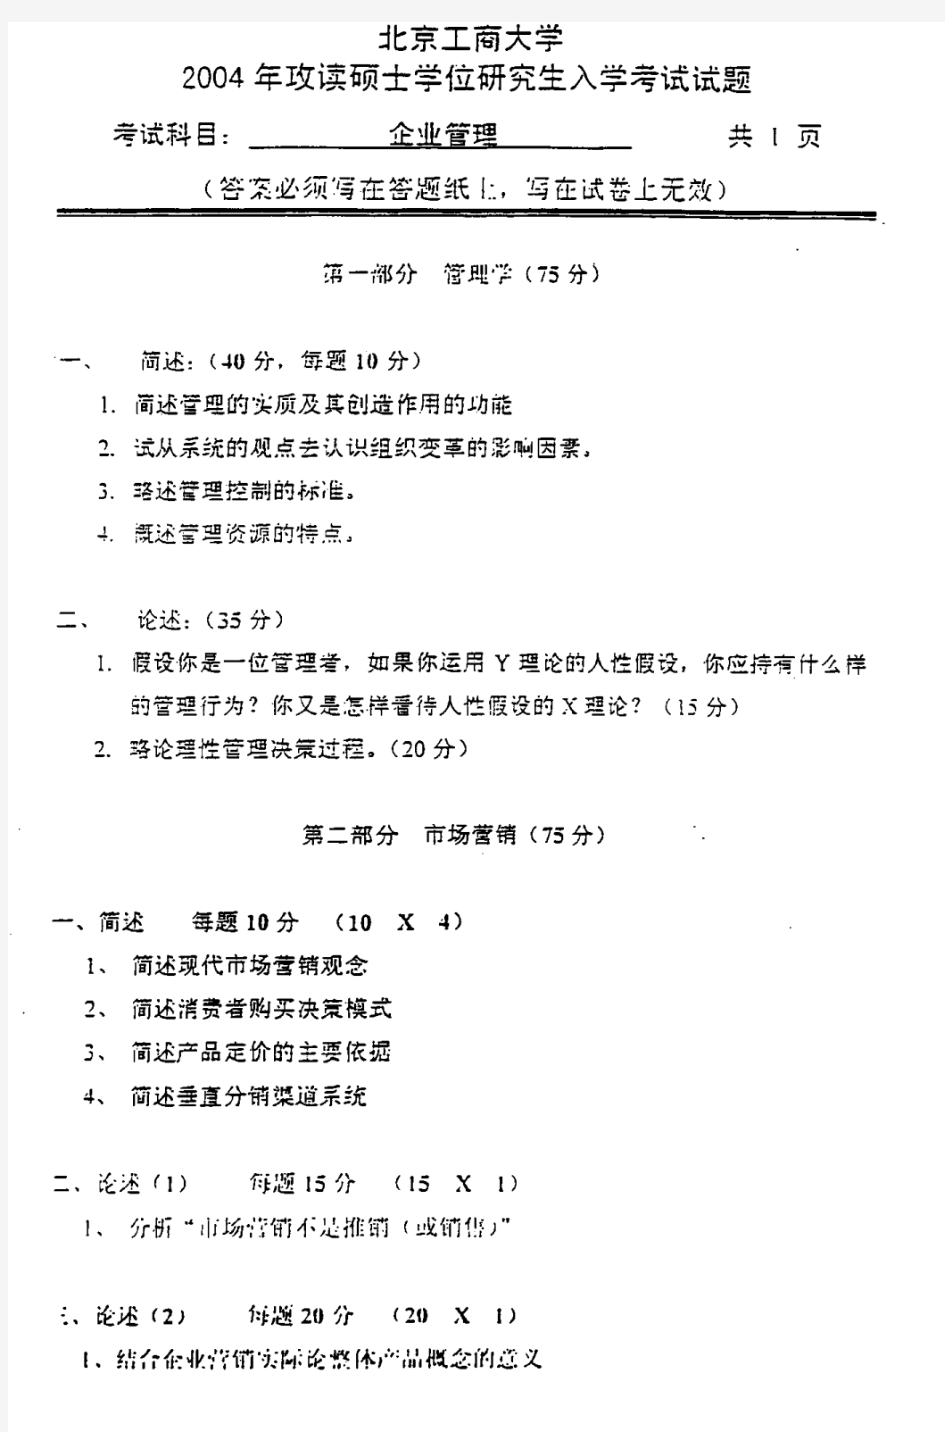 北京工商大学 北工商 2004年企业管理 考研真题及答案解析